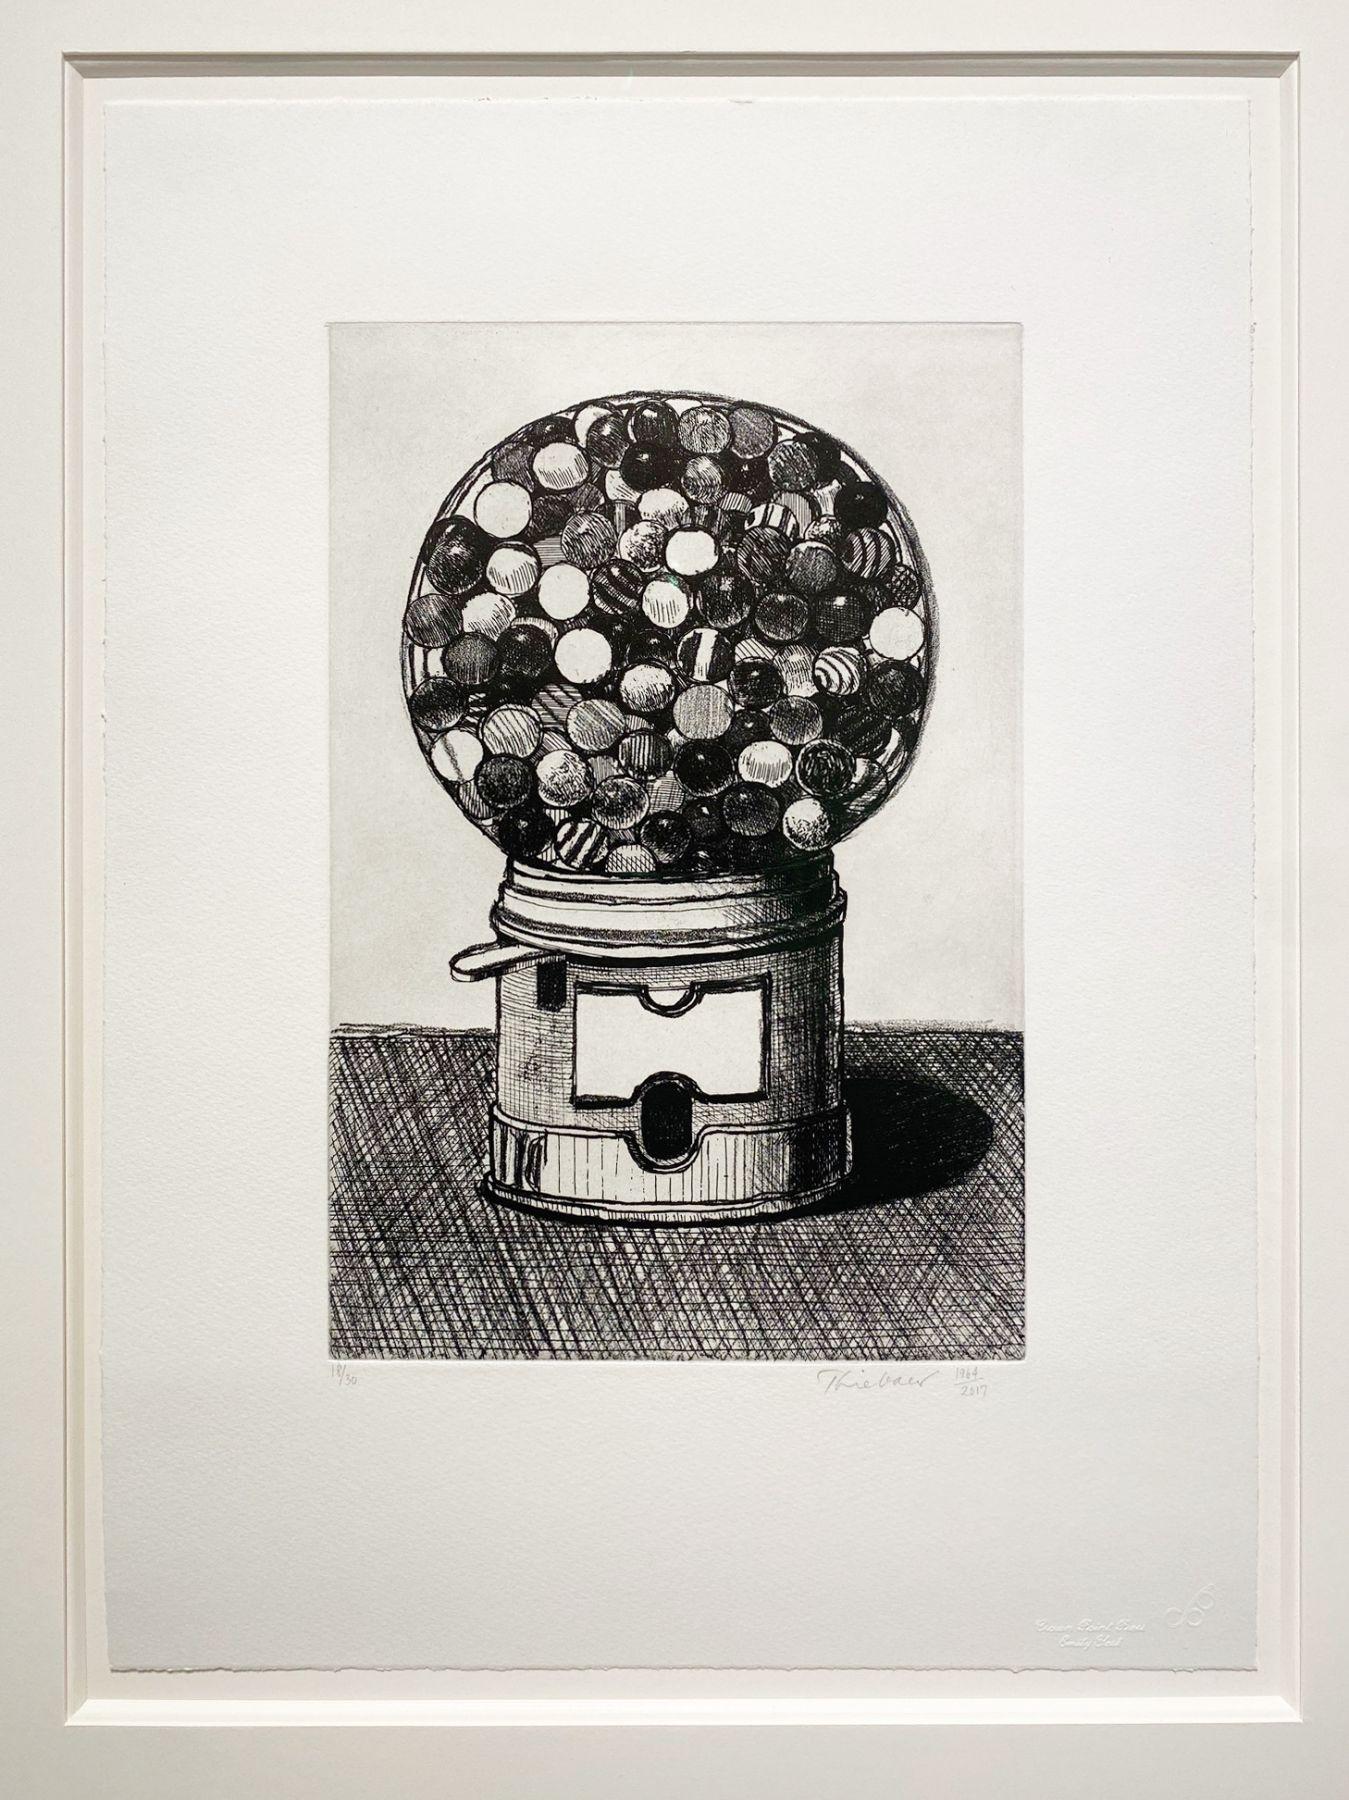 Dunkelgraue Gumballmaschine (Nachkriegszeit), Print, von Wayne Thiebaud